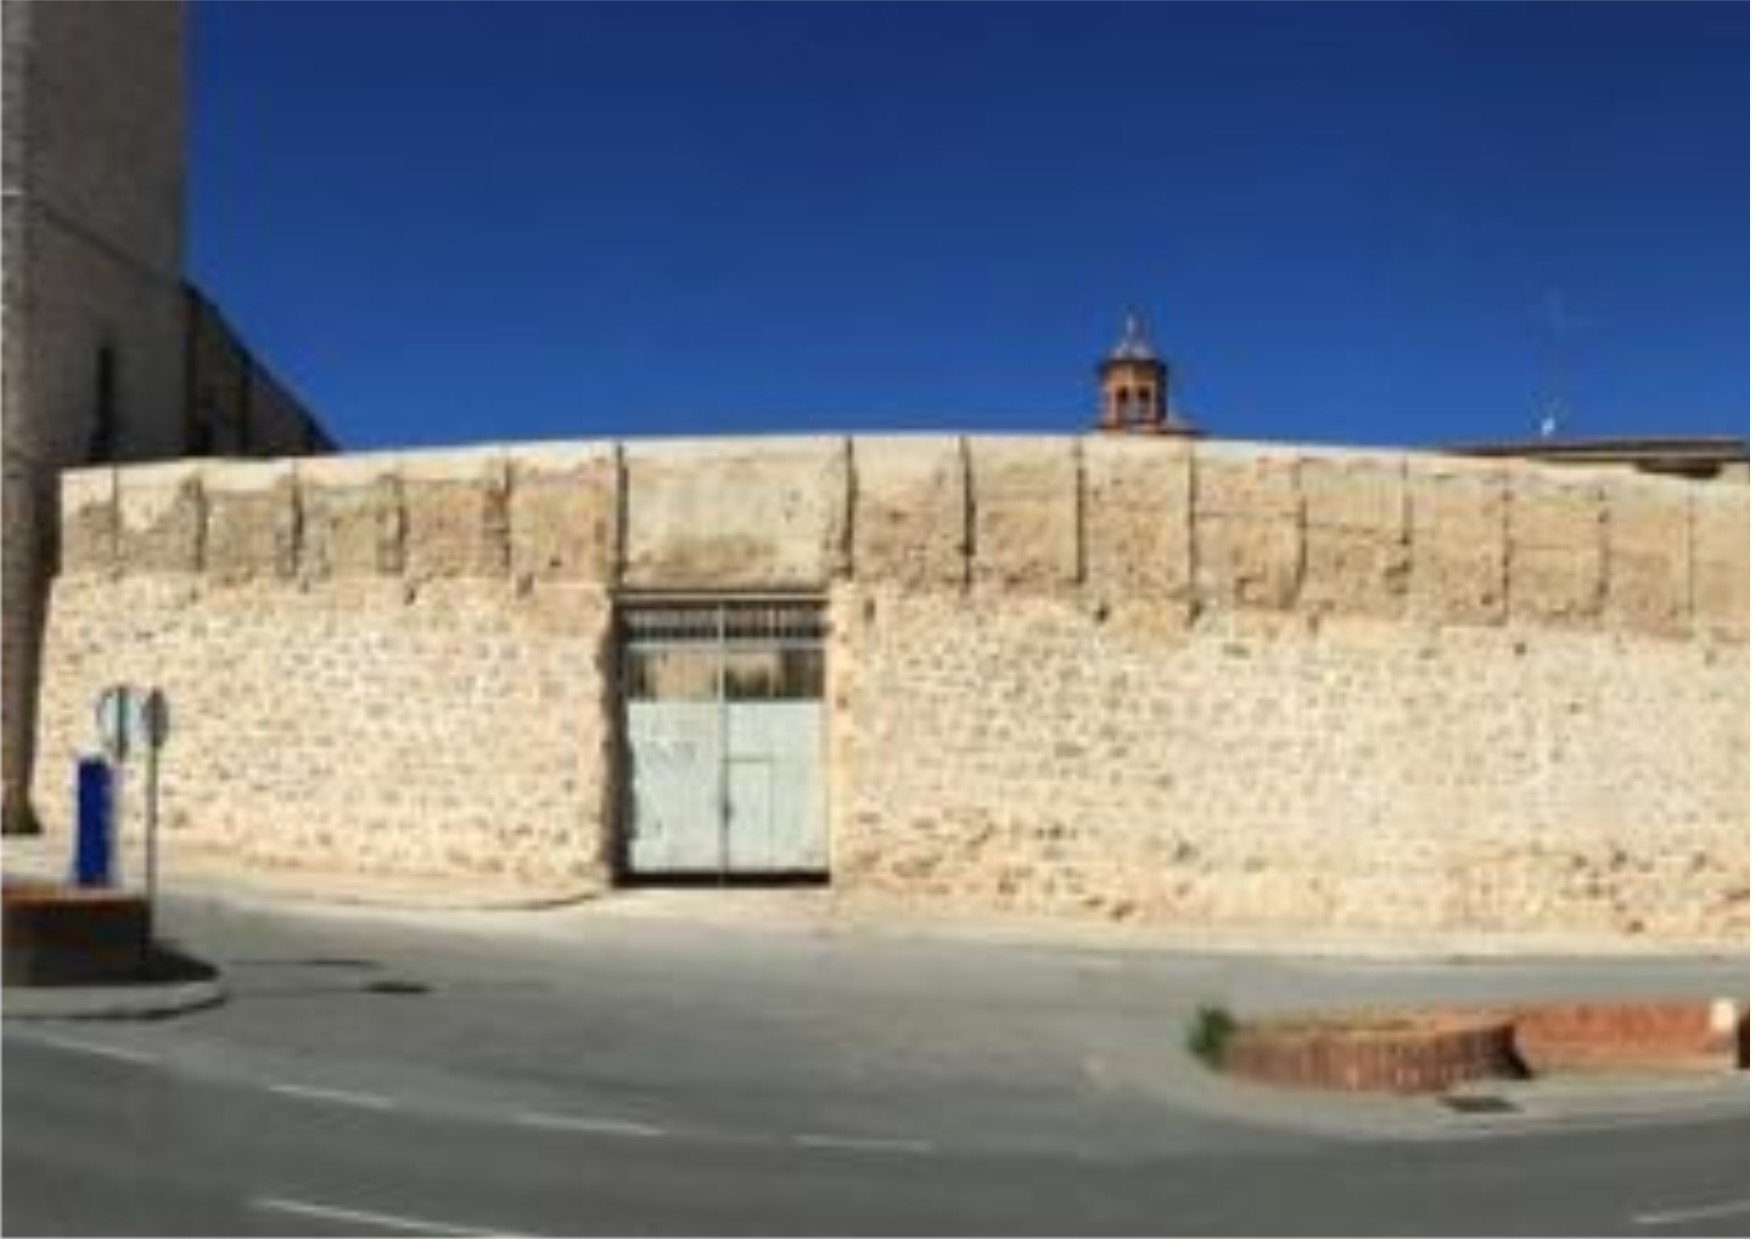 Noticia Diario de Teruel: El Ayuntamiento de Teruel remitirá a Patrimonio tres propuestas para dar solución a la puerta que desluce la muralla